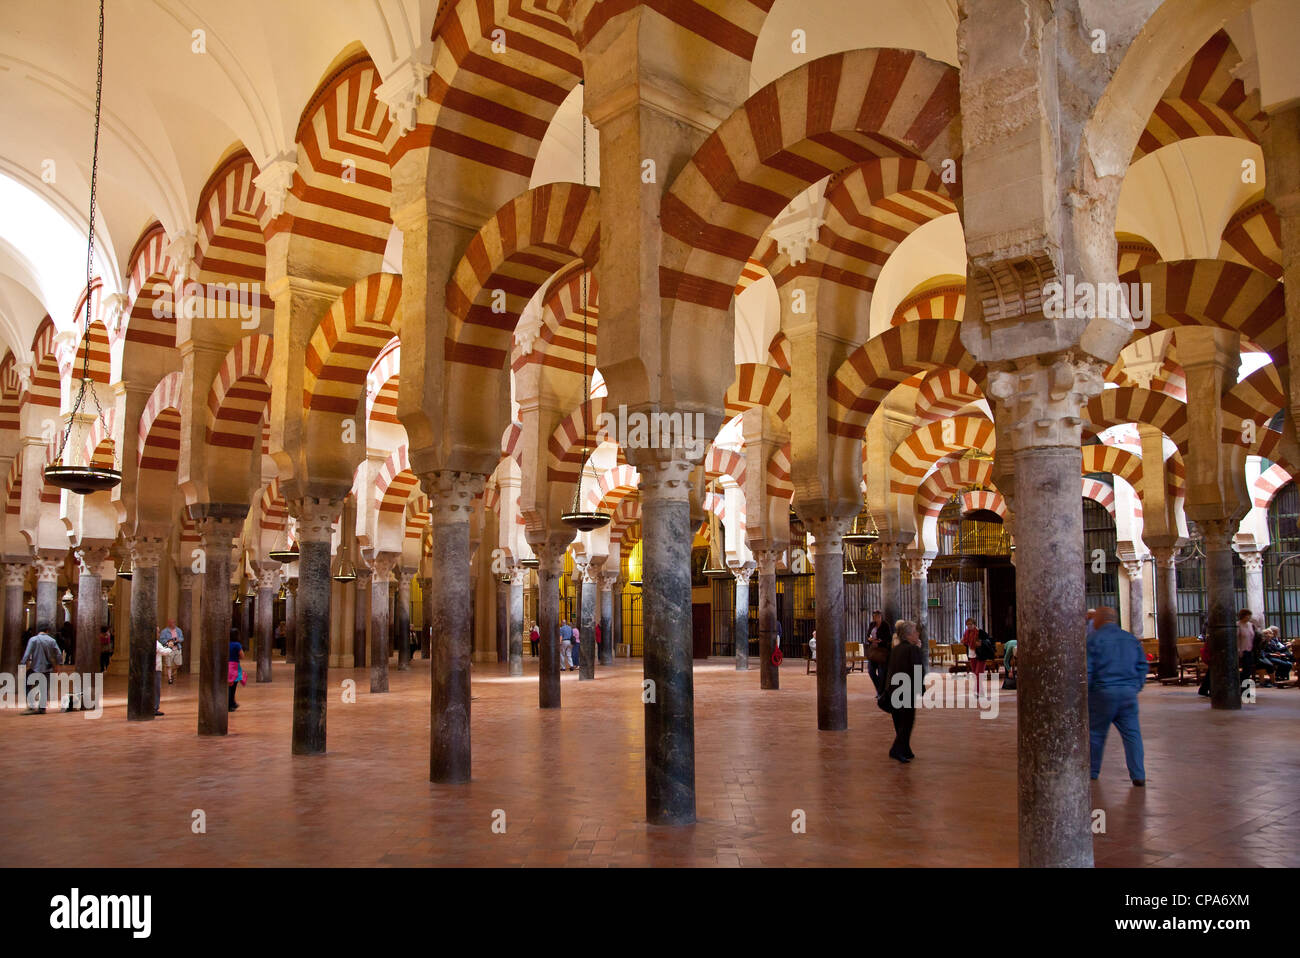 Couloirs de la mosquée de Cordoue, Espagne Banque D'Images